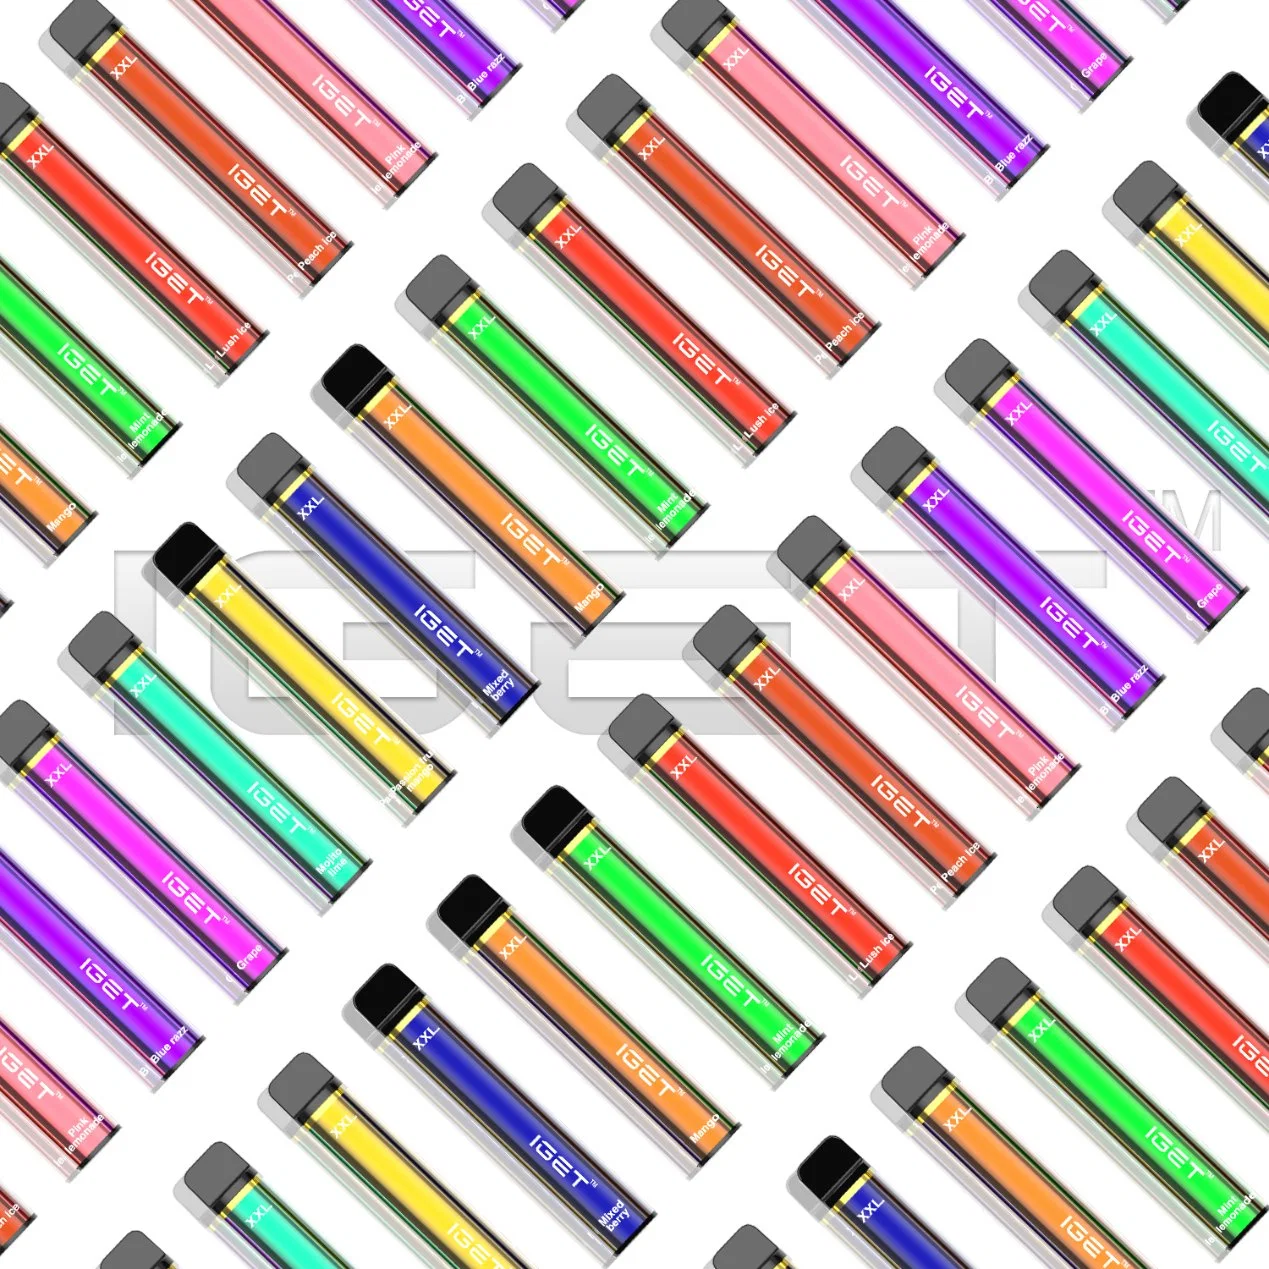 Mixed Flavors Iget XXL 1800puffs E Liquid Cigarette Wholesale Disposable Vape Pen